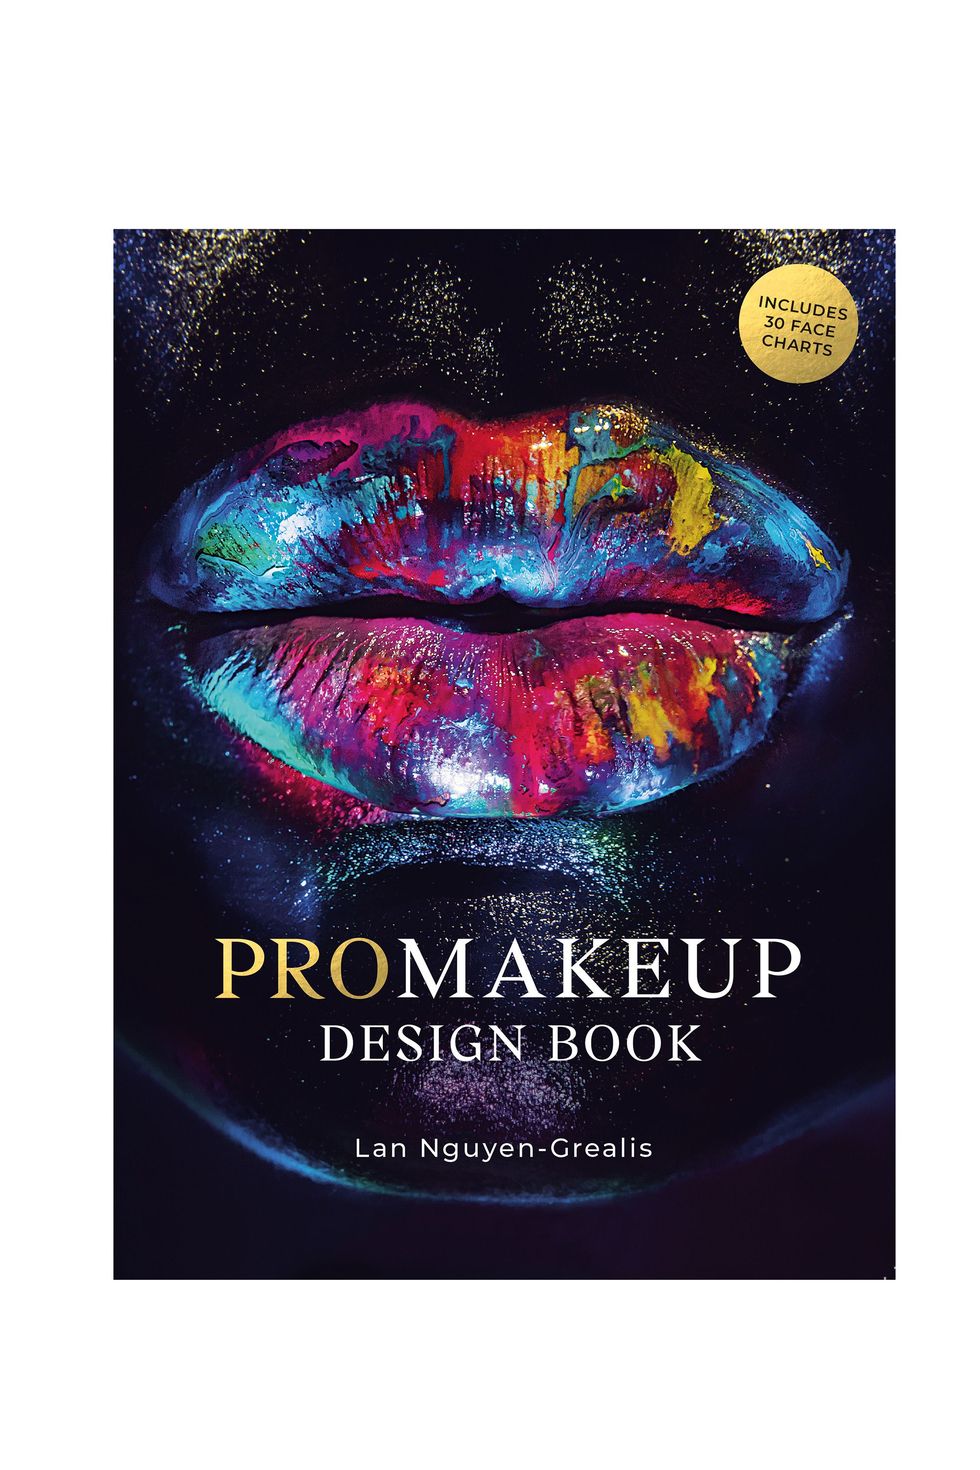 ProMakeup Design Book by Lan Nguyen-Grealis